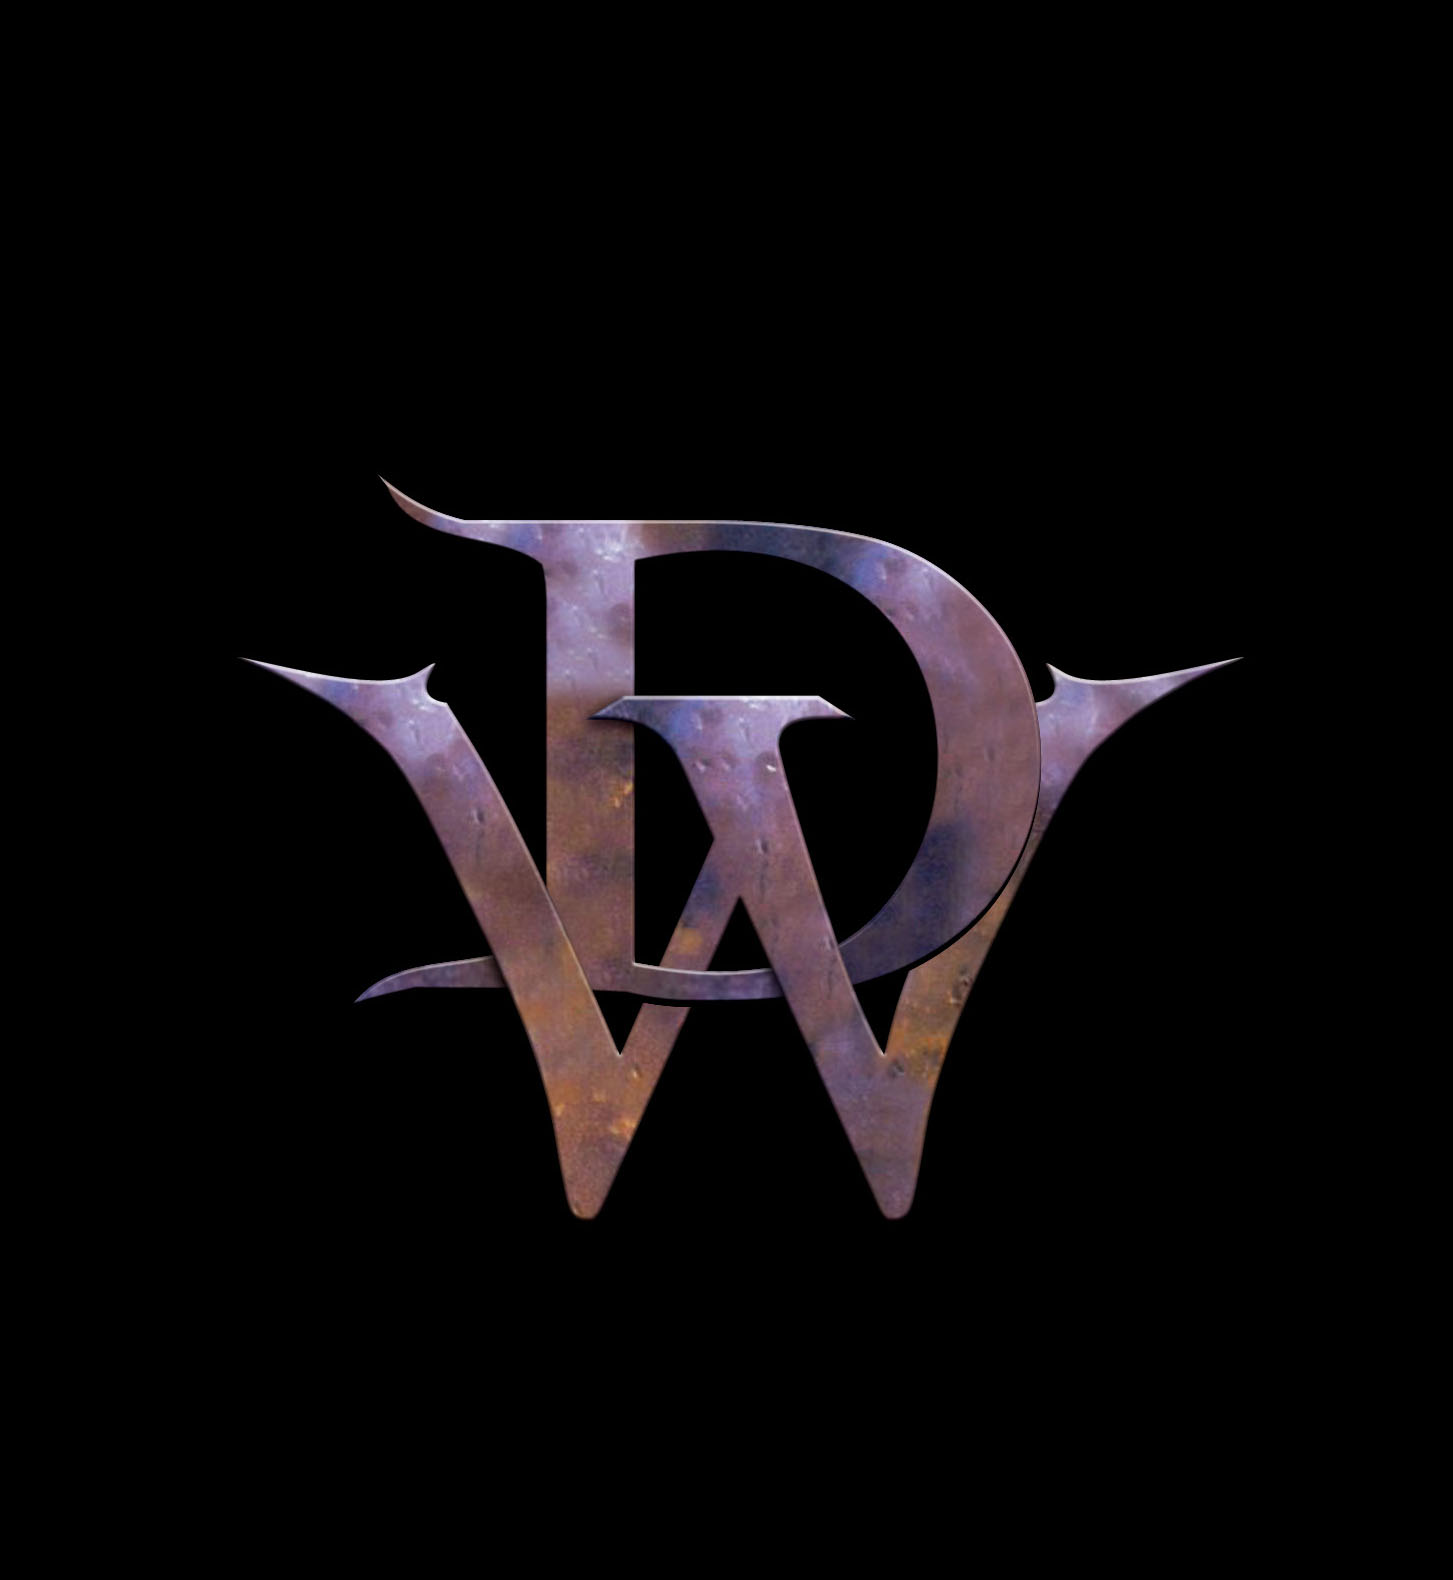 dw logo